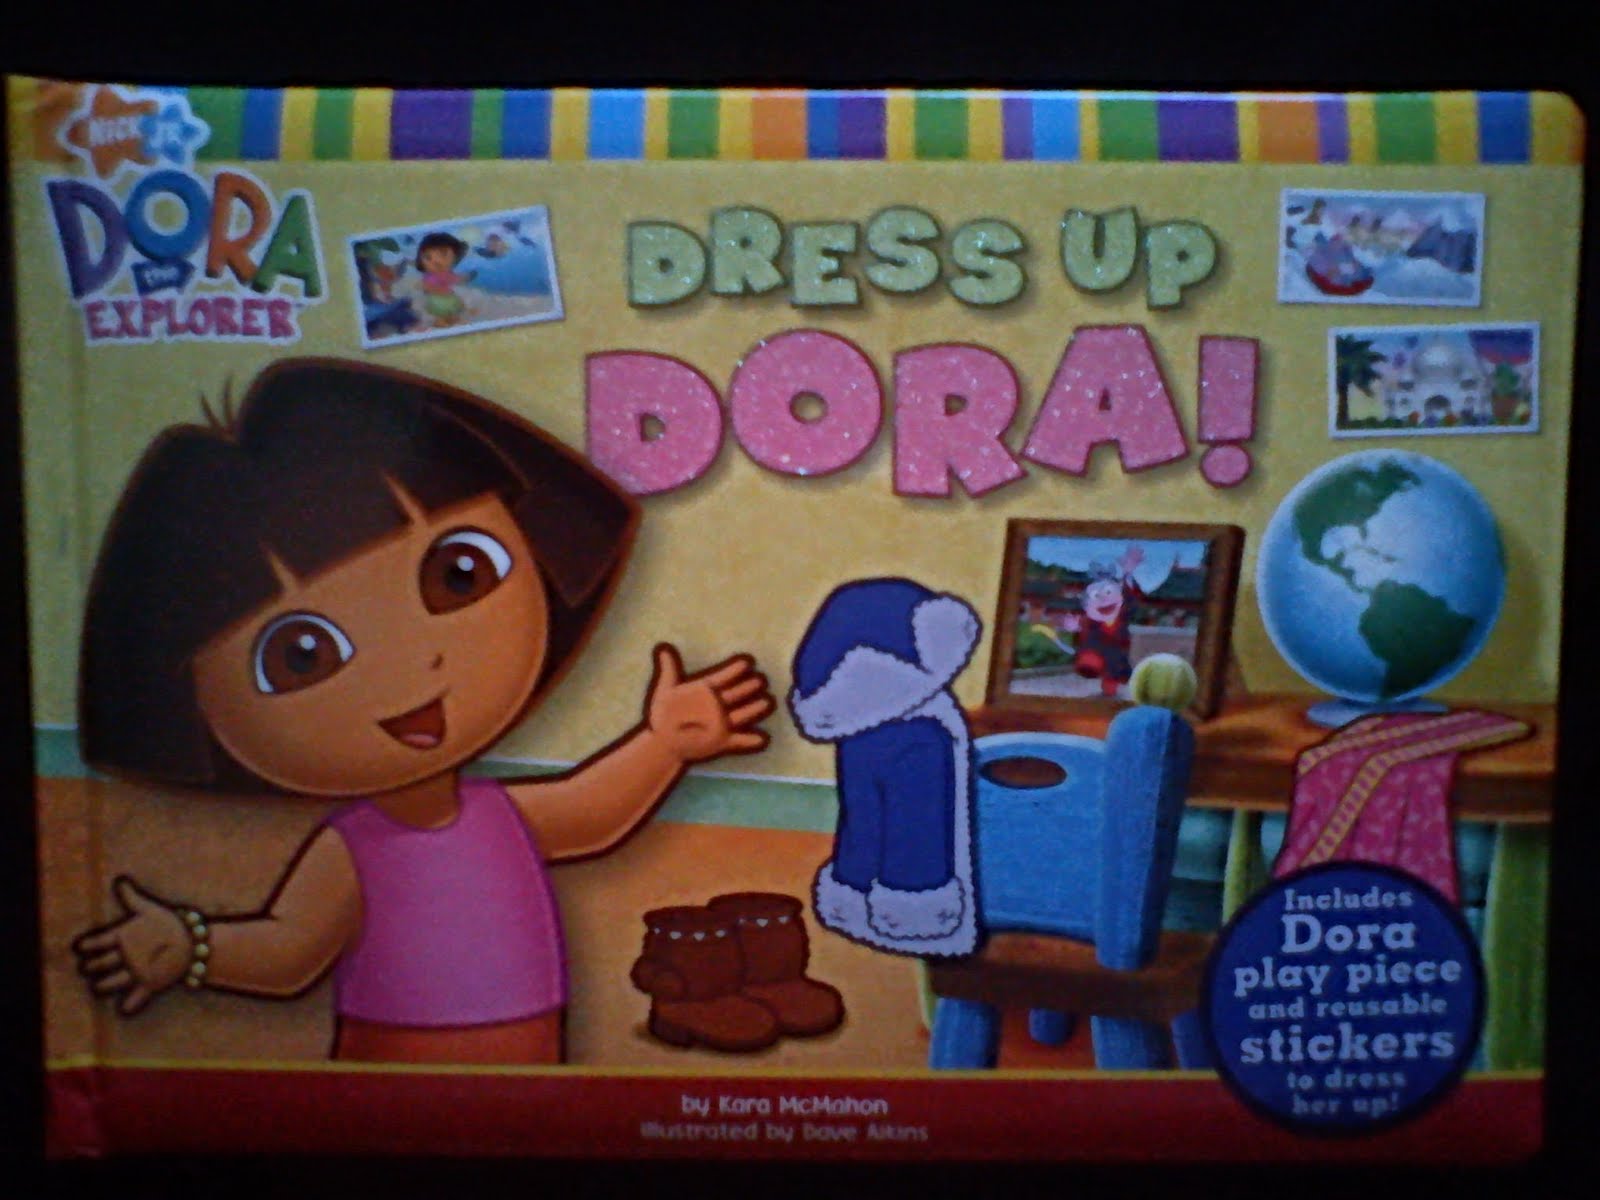 DORA The Explorer-Dress Up Dora.